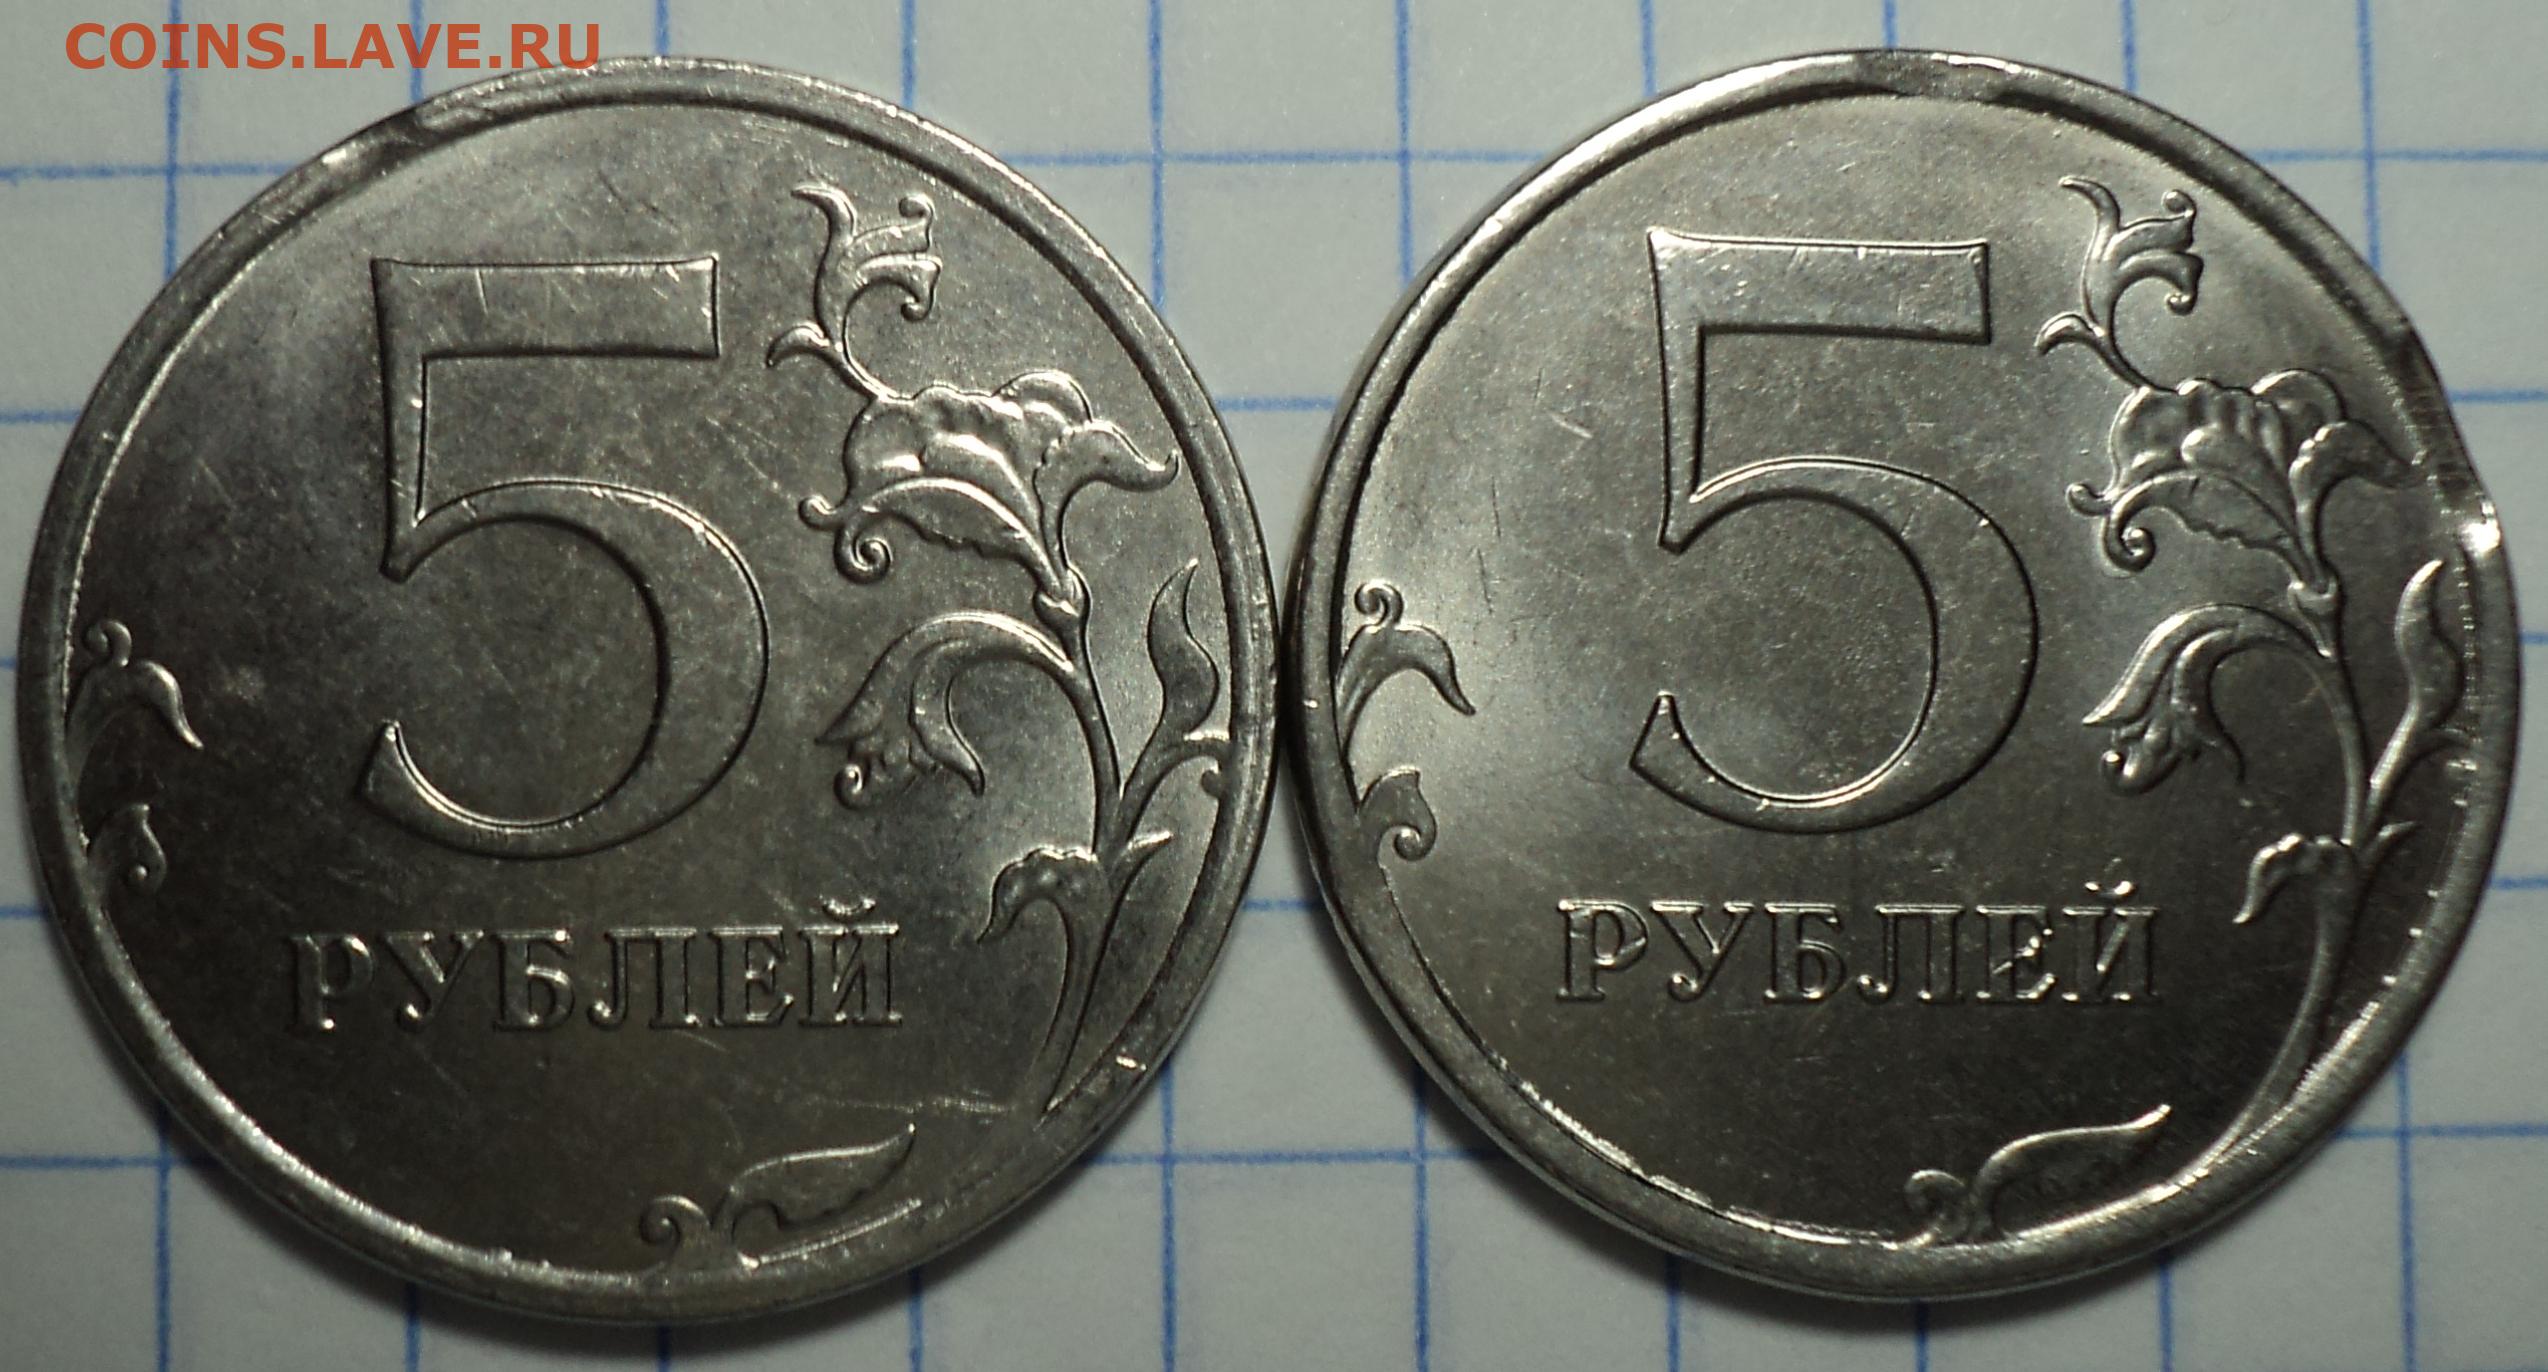 2 рубля 80 копеек. Выкус монета 5 копеек. 12.5 Рублей монета. 5 Копеек 98. Монета 9 рублей и 10 копеек.